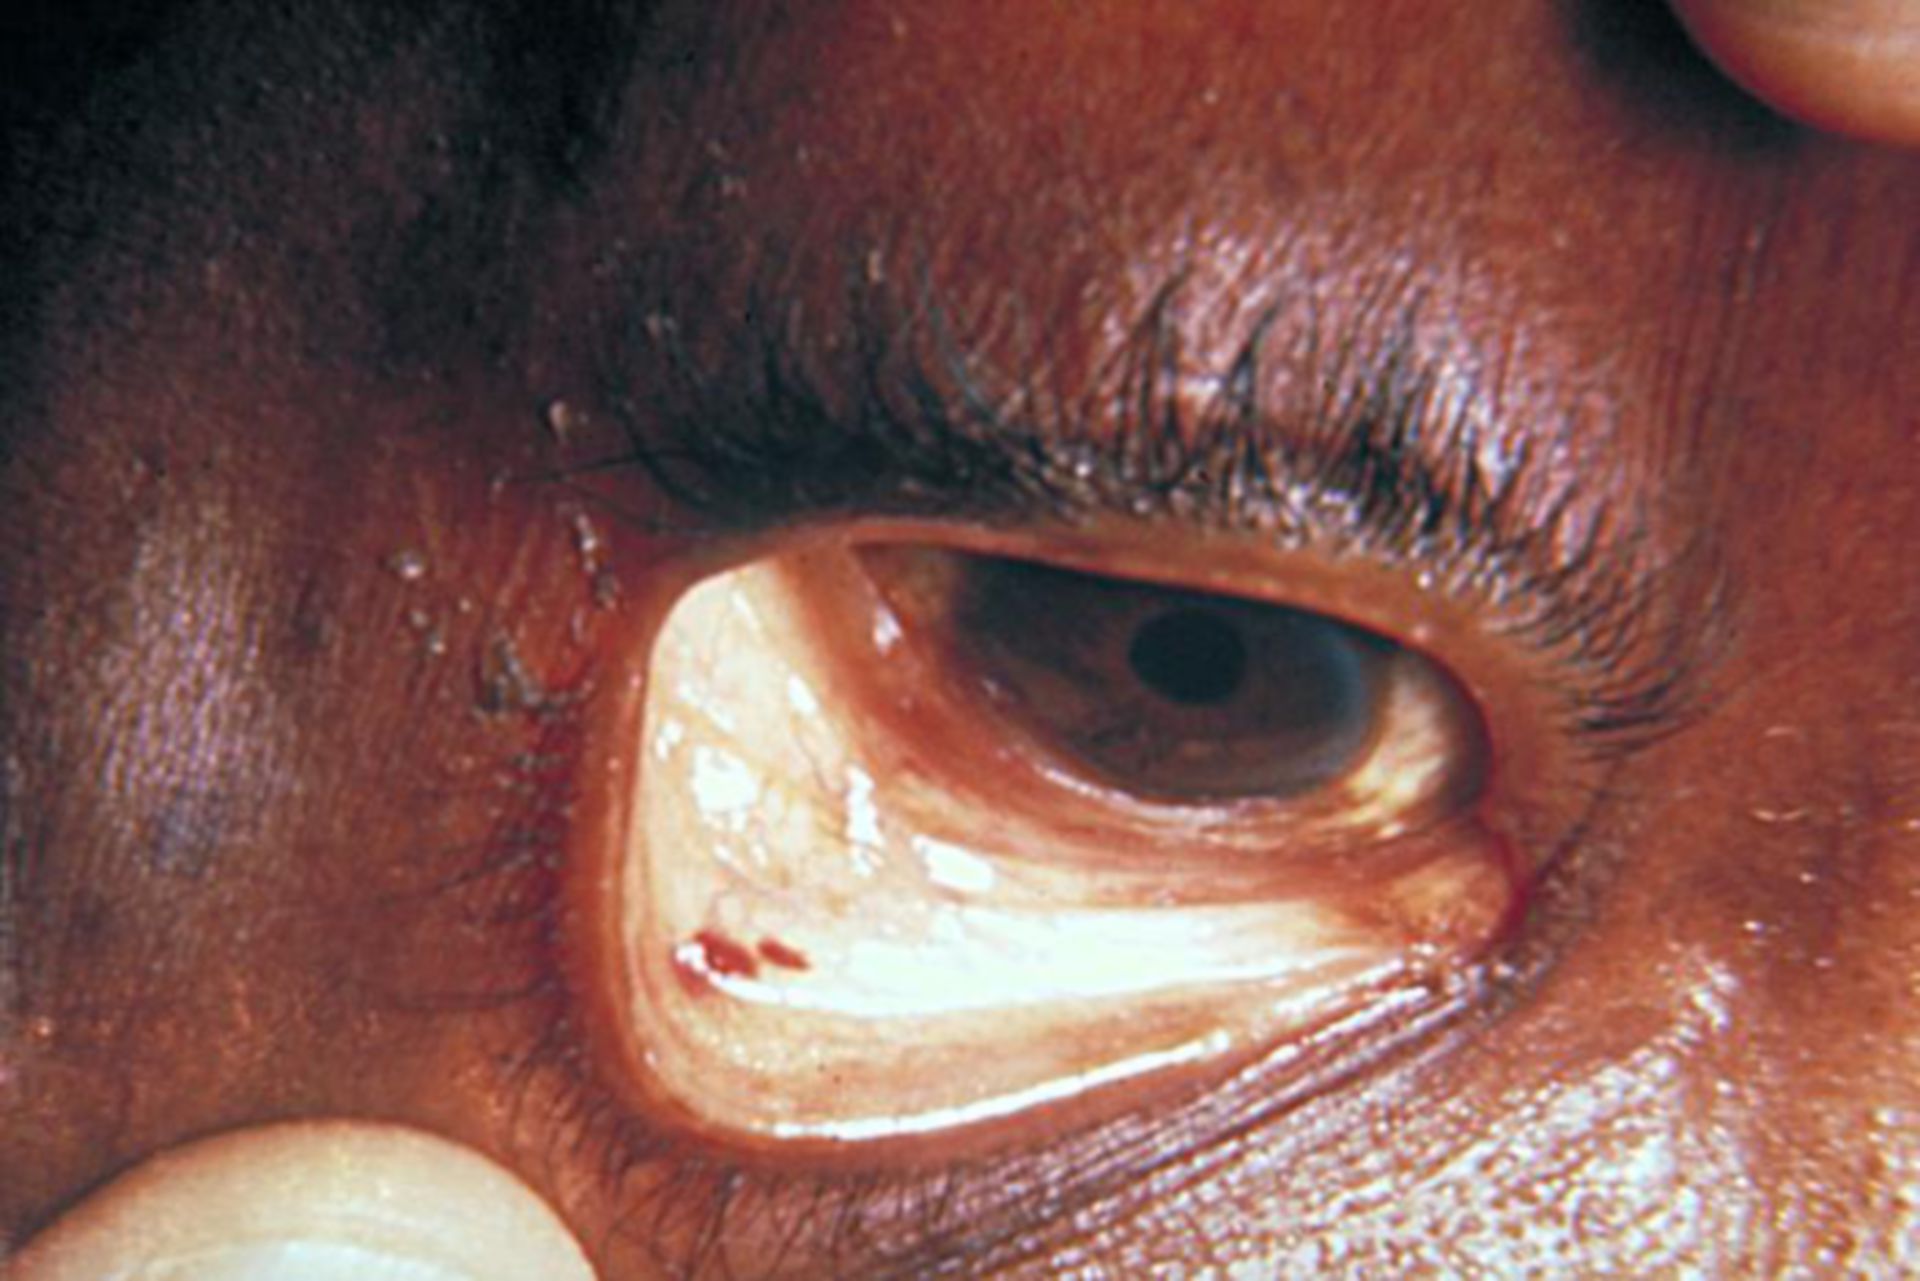 Staphylokokken-Infektion: Sepsis - Auge